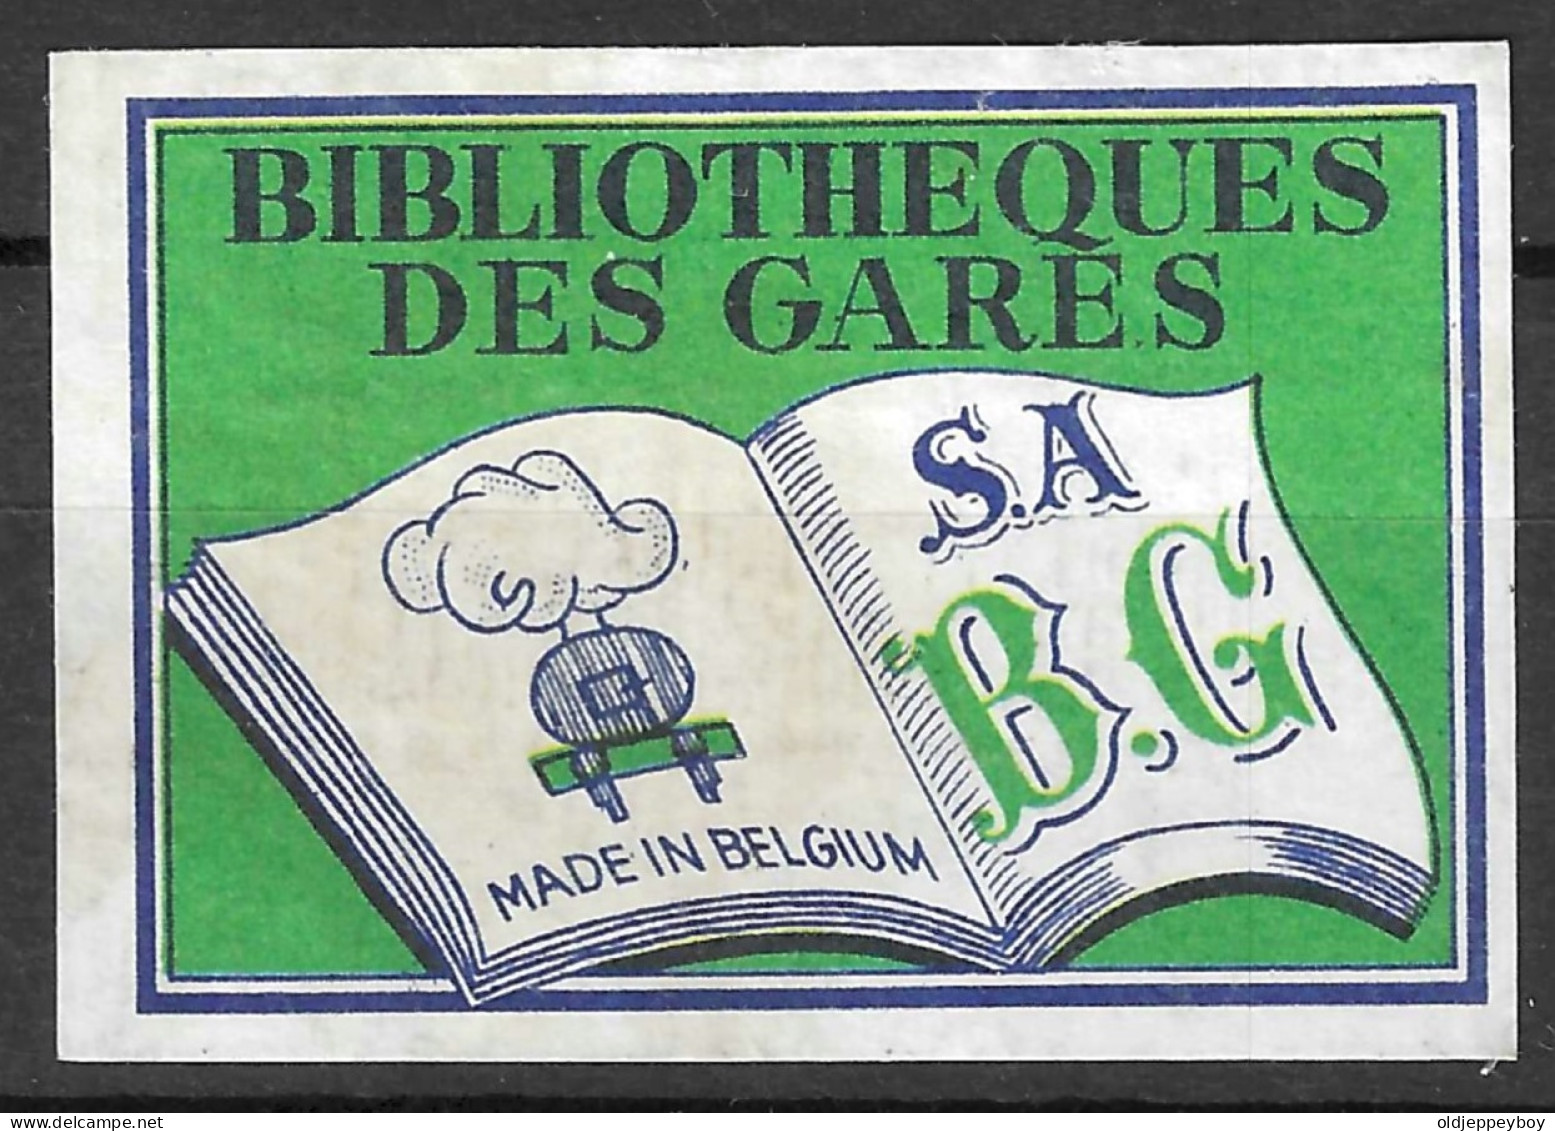  VINTAGE MATCHBOX LABEL BELGIUM BIBLIOTHEQUES DES GARES   5  X 3.5  Cm  - Boites D'allumettes - Etiquettes